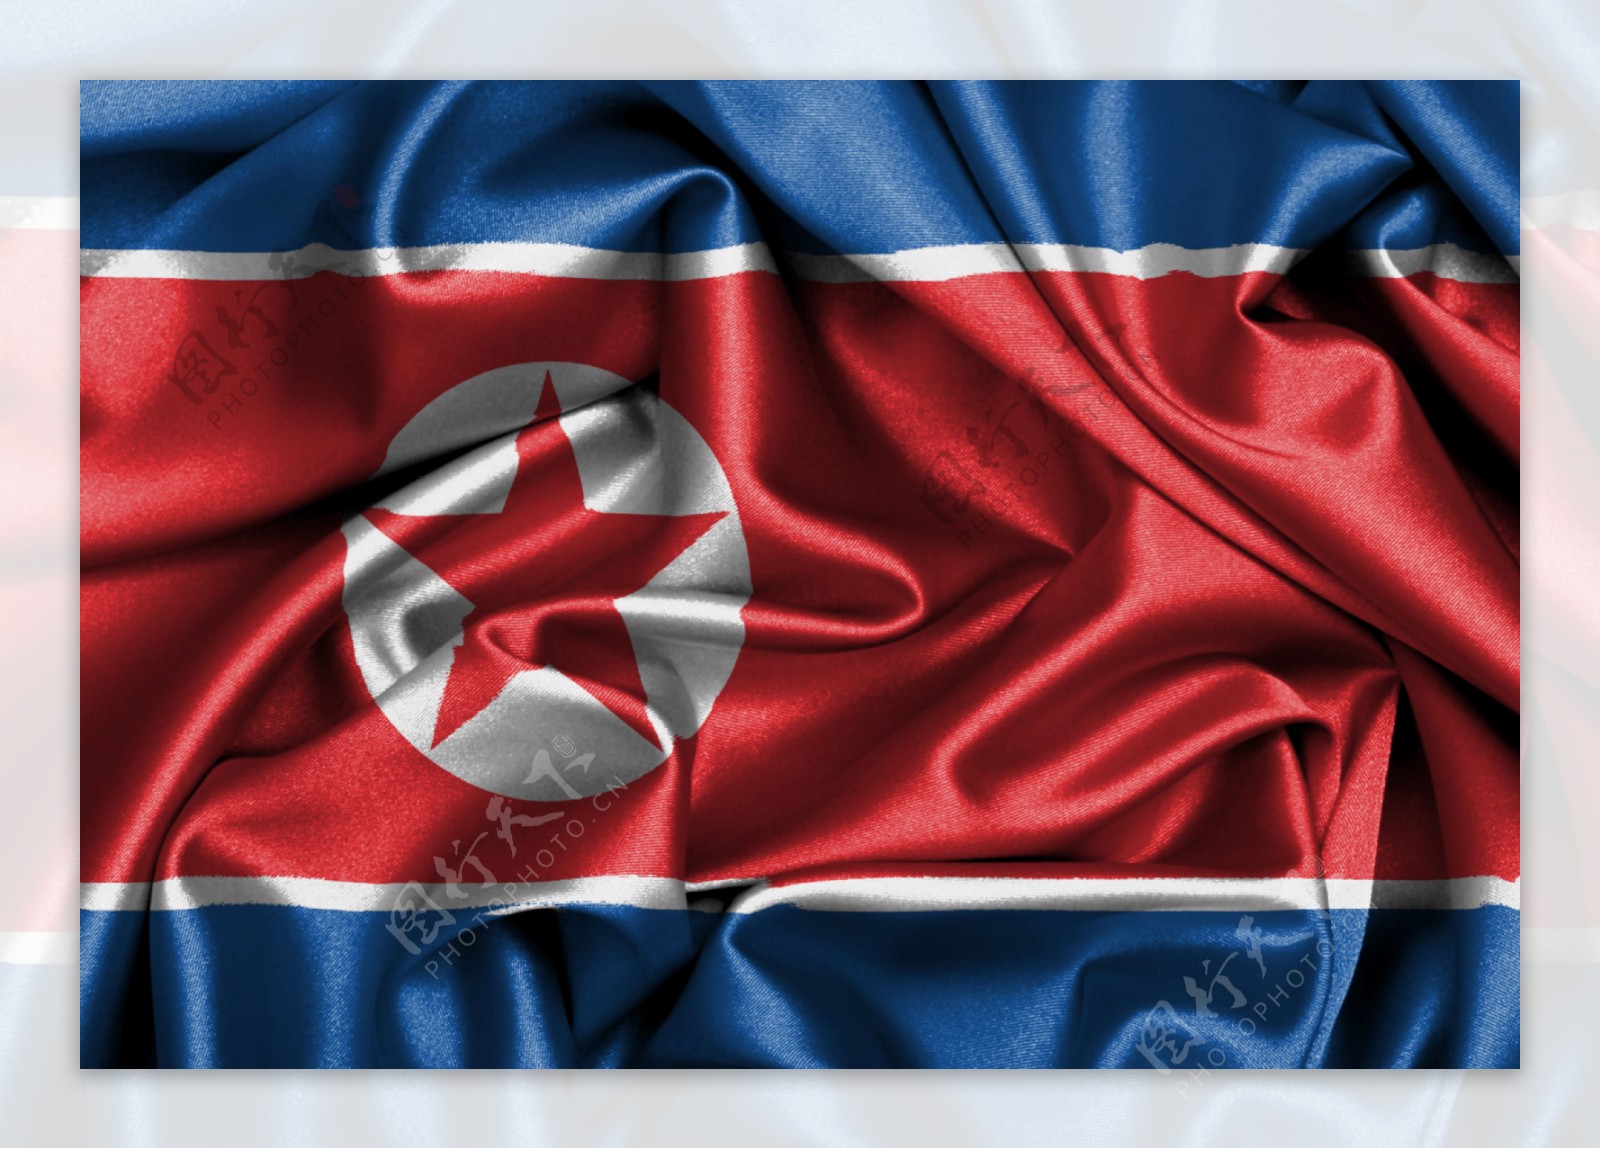 朝鲜绸缎国旗图片